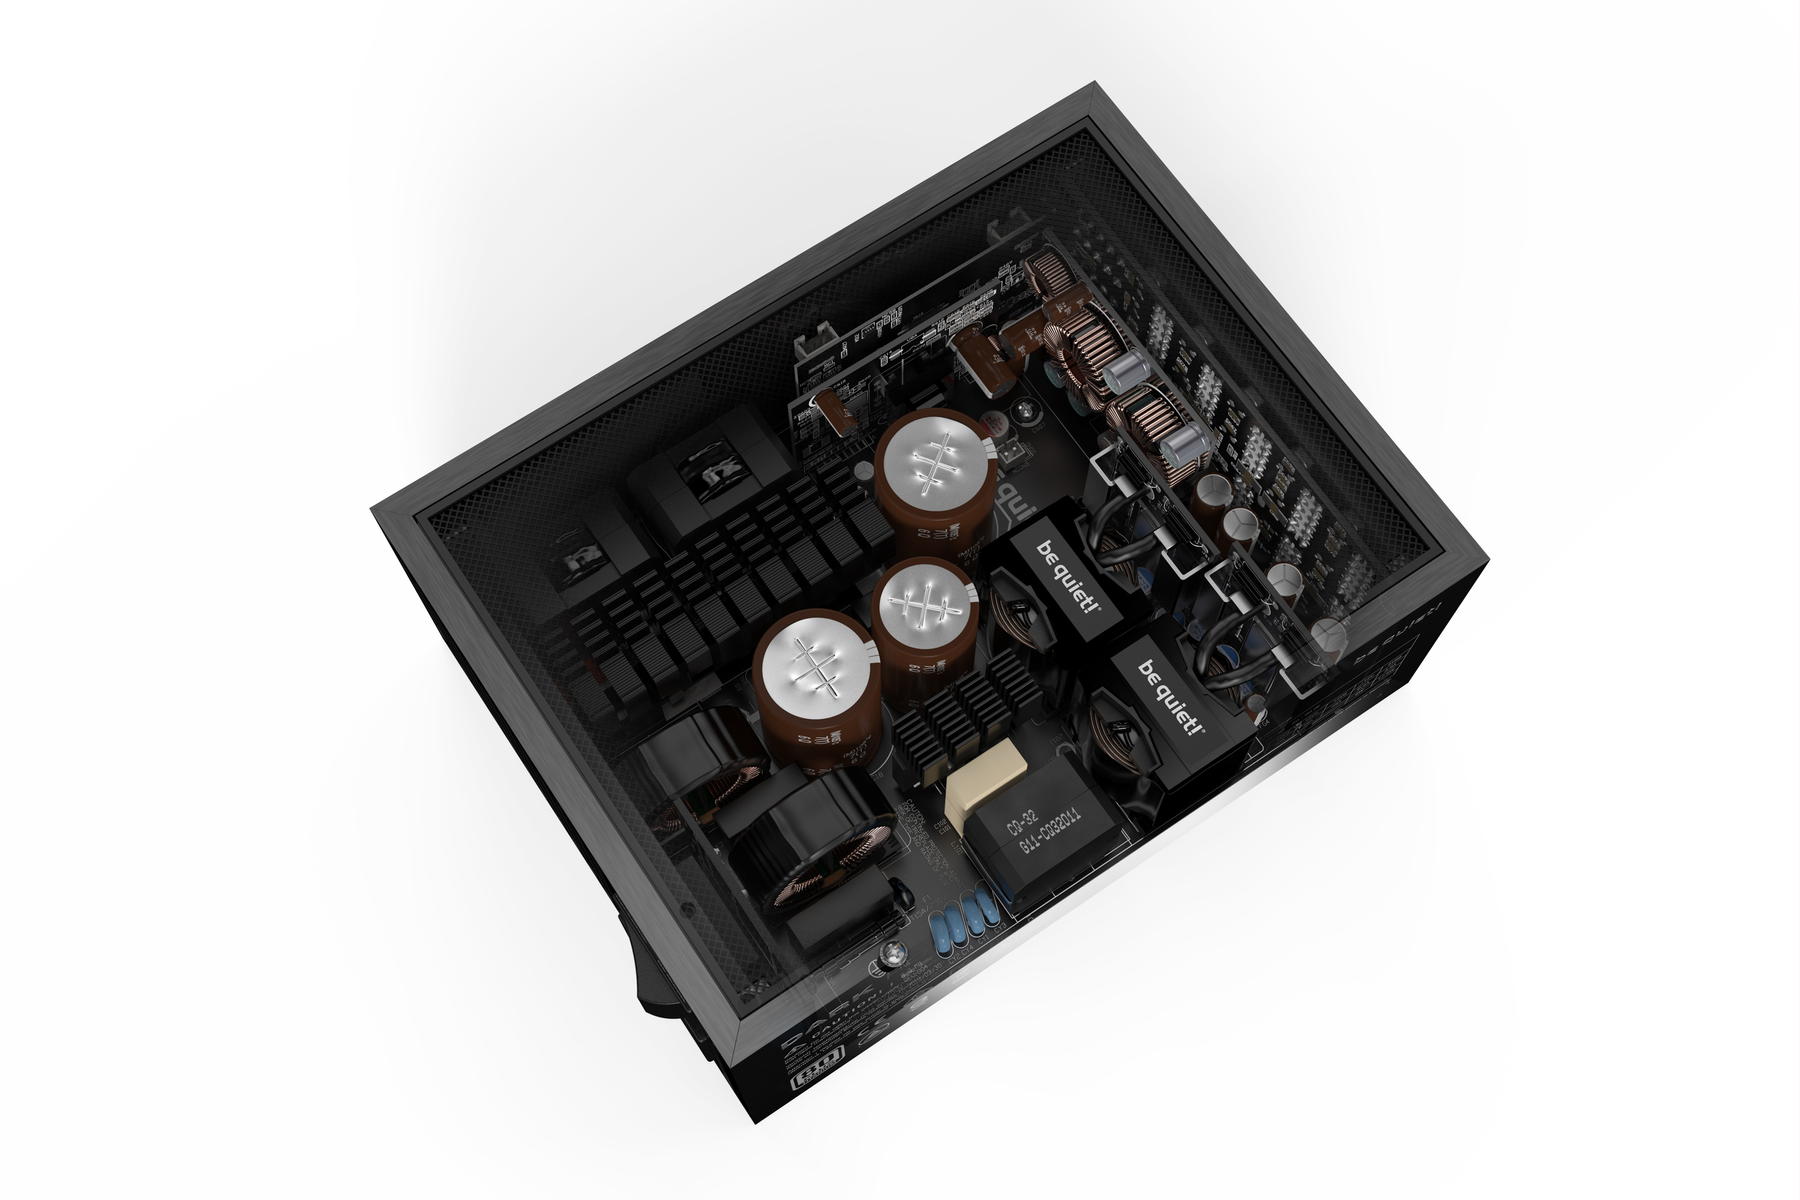 80 QUIET! , Netzteil BE Power 1300 Dark PC Pro zu PLUS 94.4%) (bis 13 Watt 1300W Titanium-Effizienz